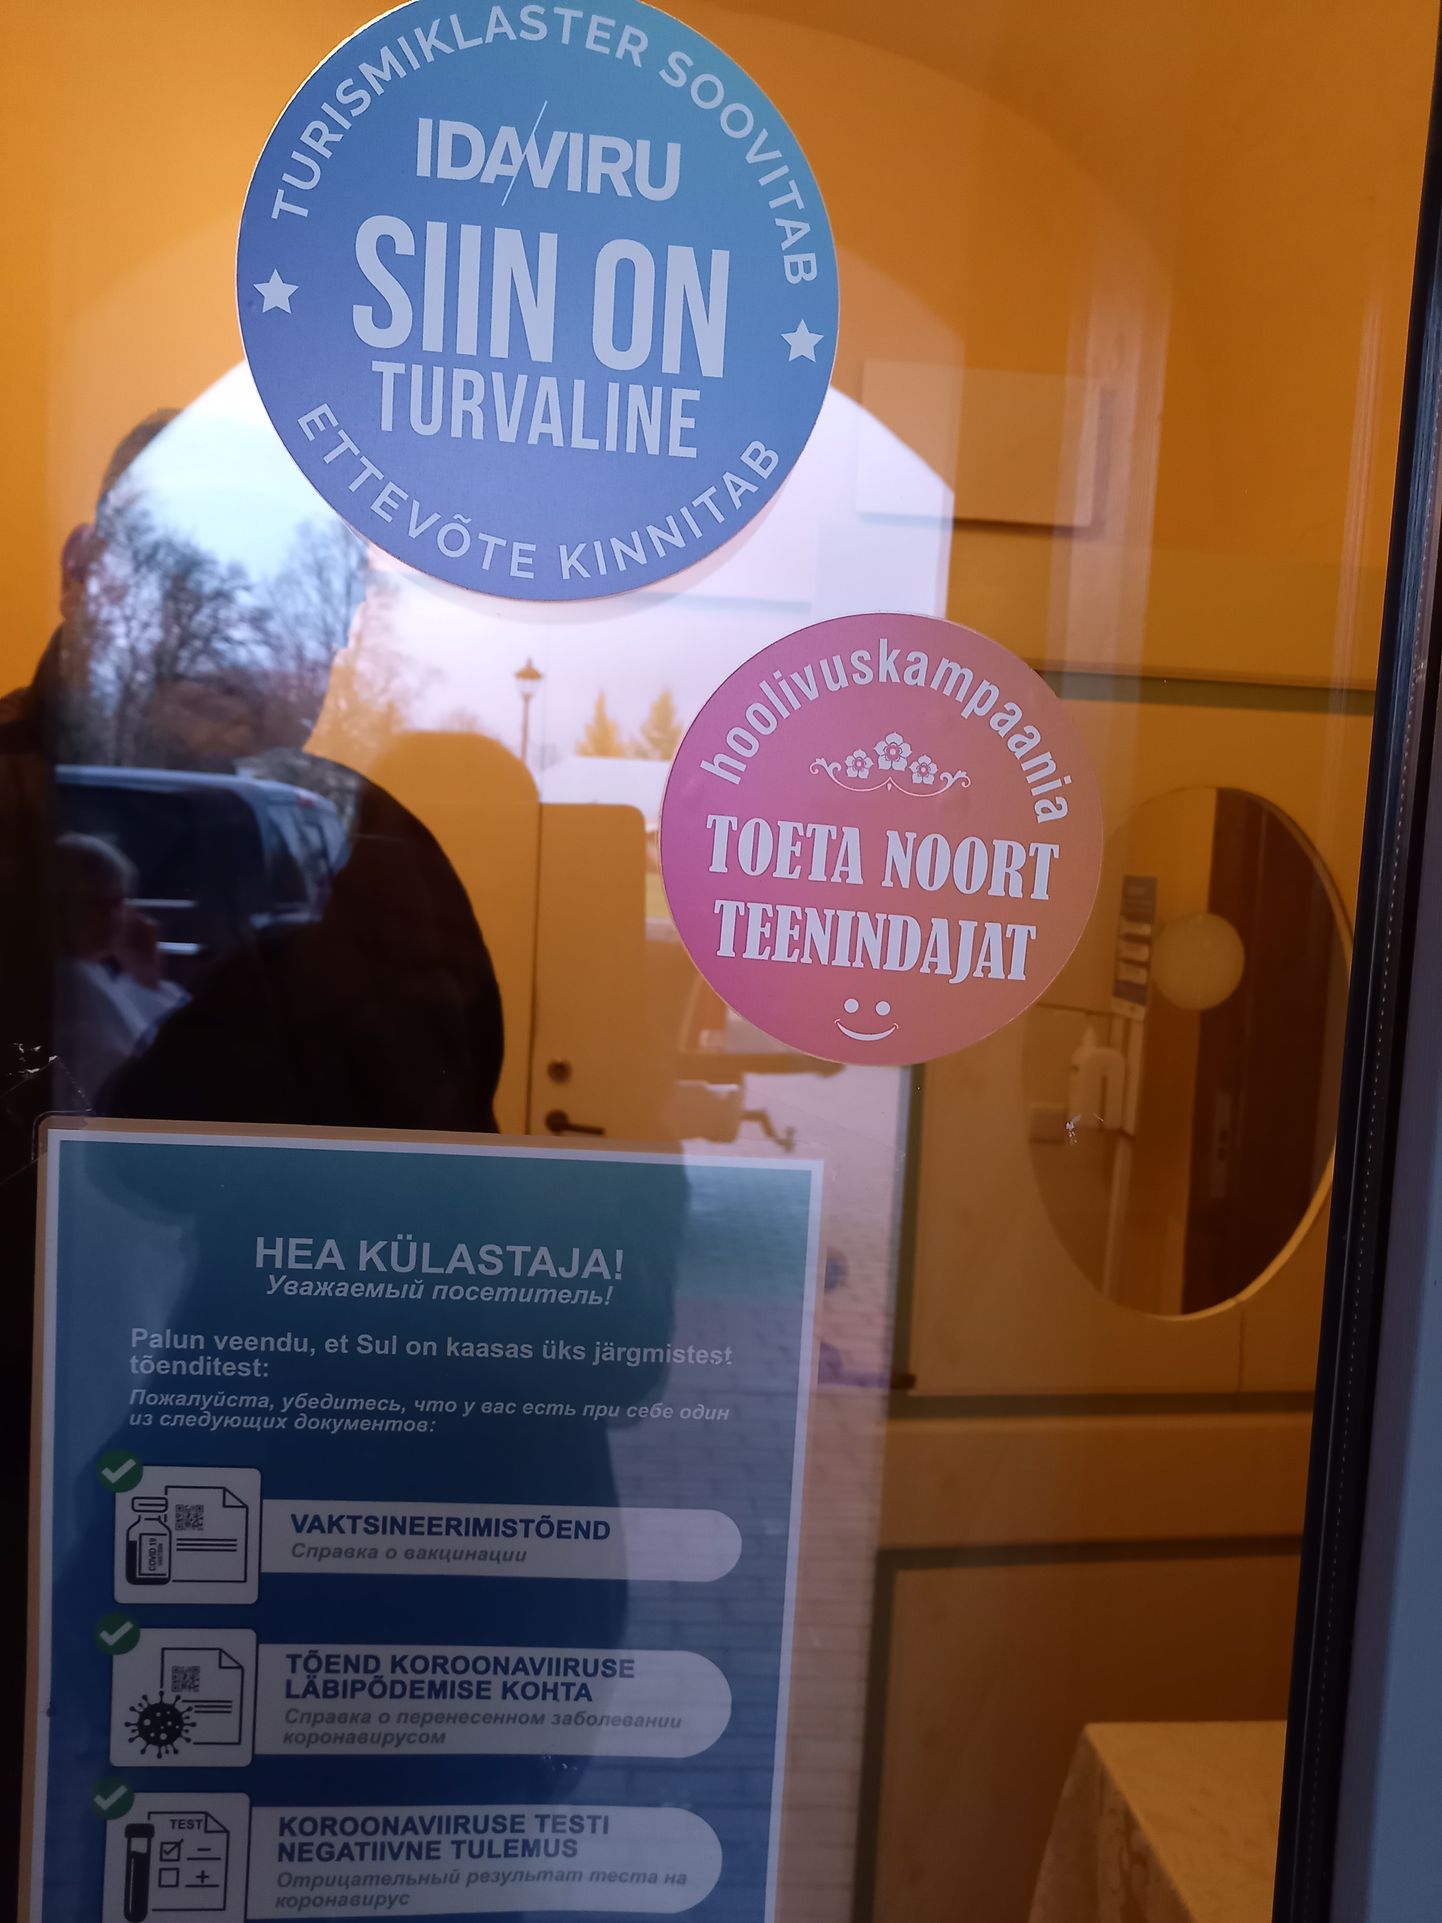 Наклейки на двери отеля мызы Мяэтагузе подтверждают, что здесь клиент может безопасно отдохнуть. Не вакцинирован лишь один работник, но он обязан тестироваться каждый рабочий день.